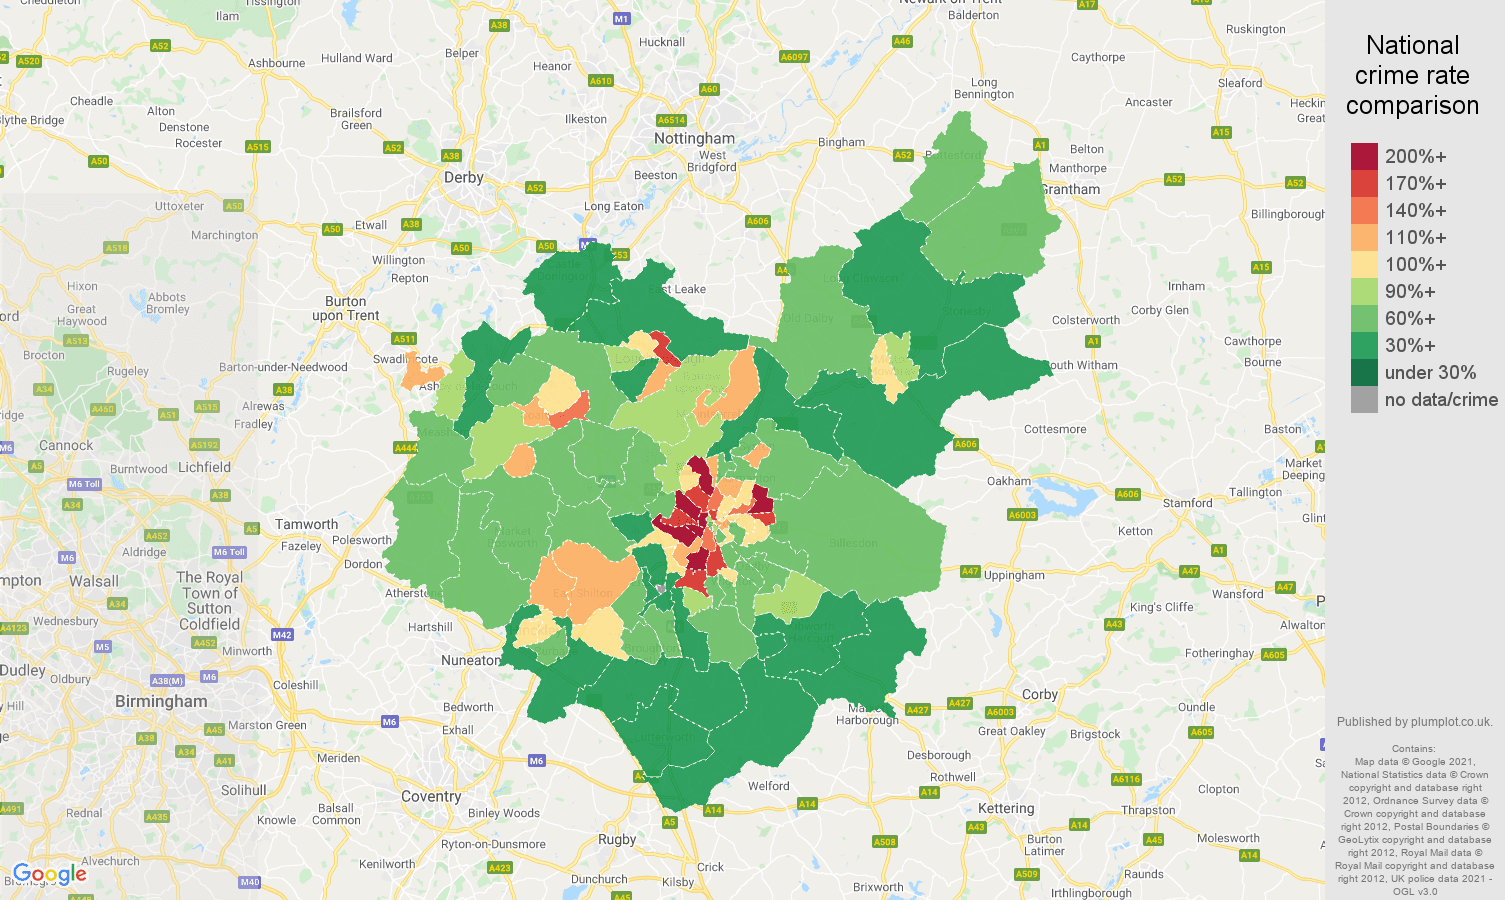 Leicestershire violent crime rate comparison map